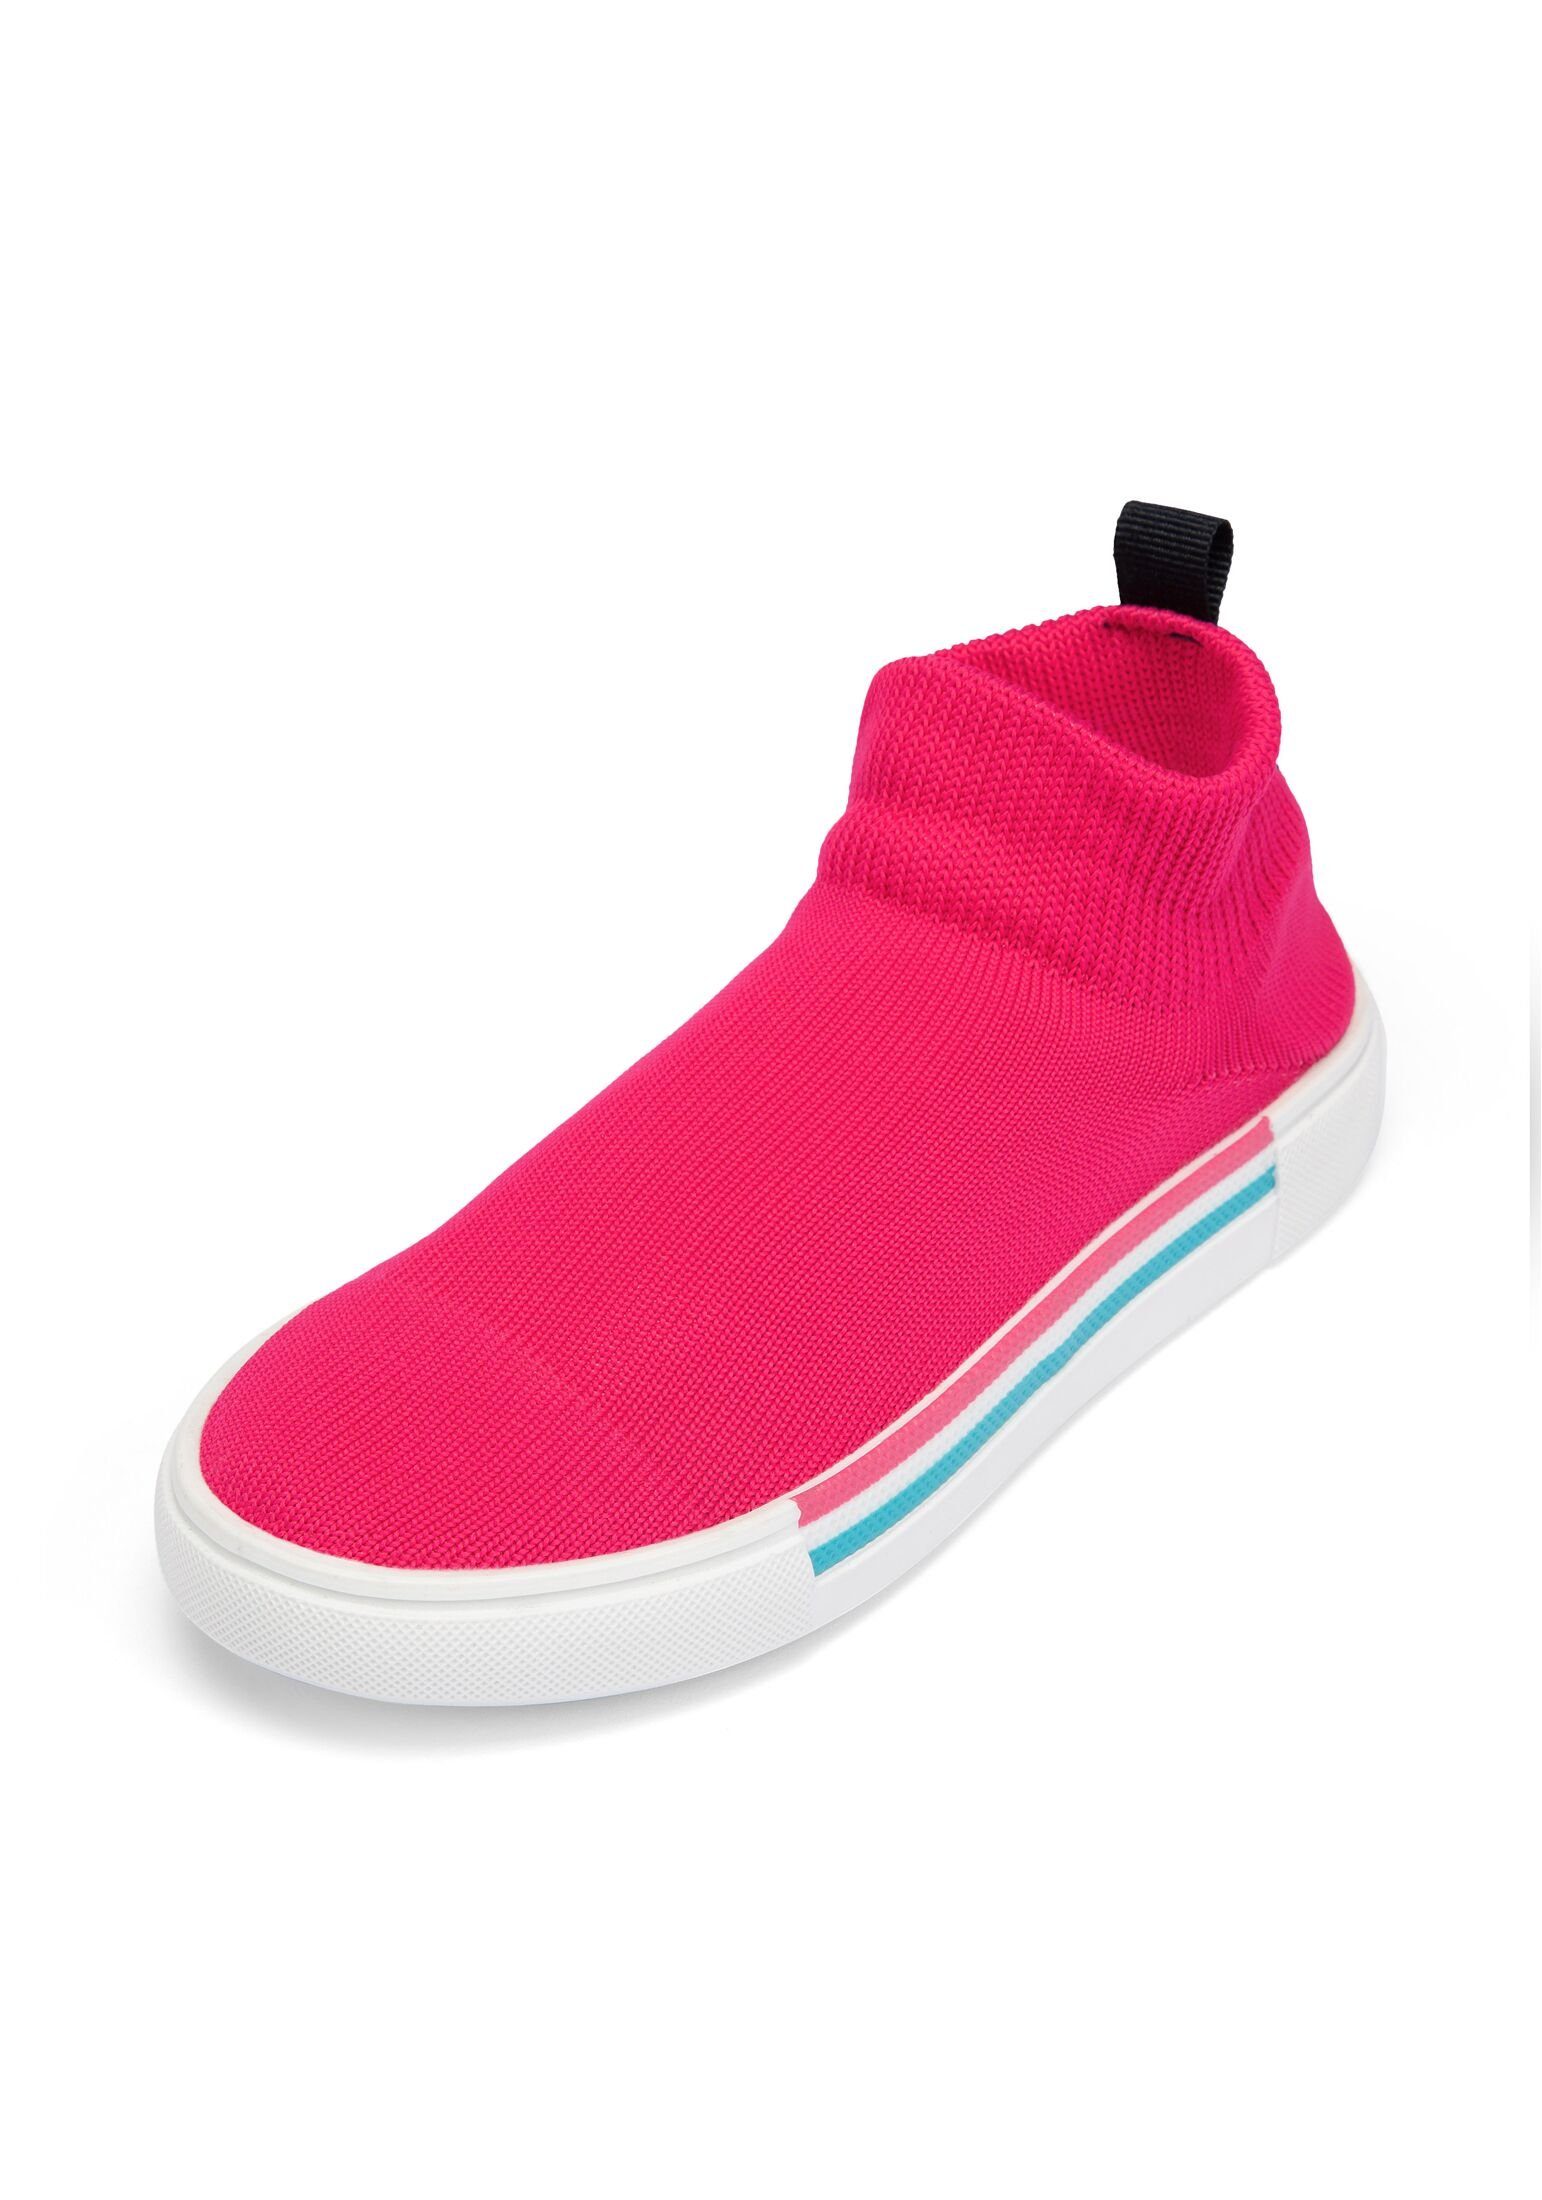 Camano phlox 1er Slipper Slip-On pink Pack Sneaker